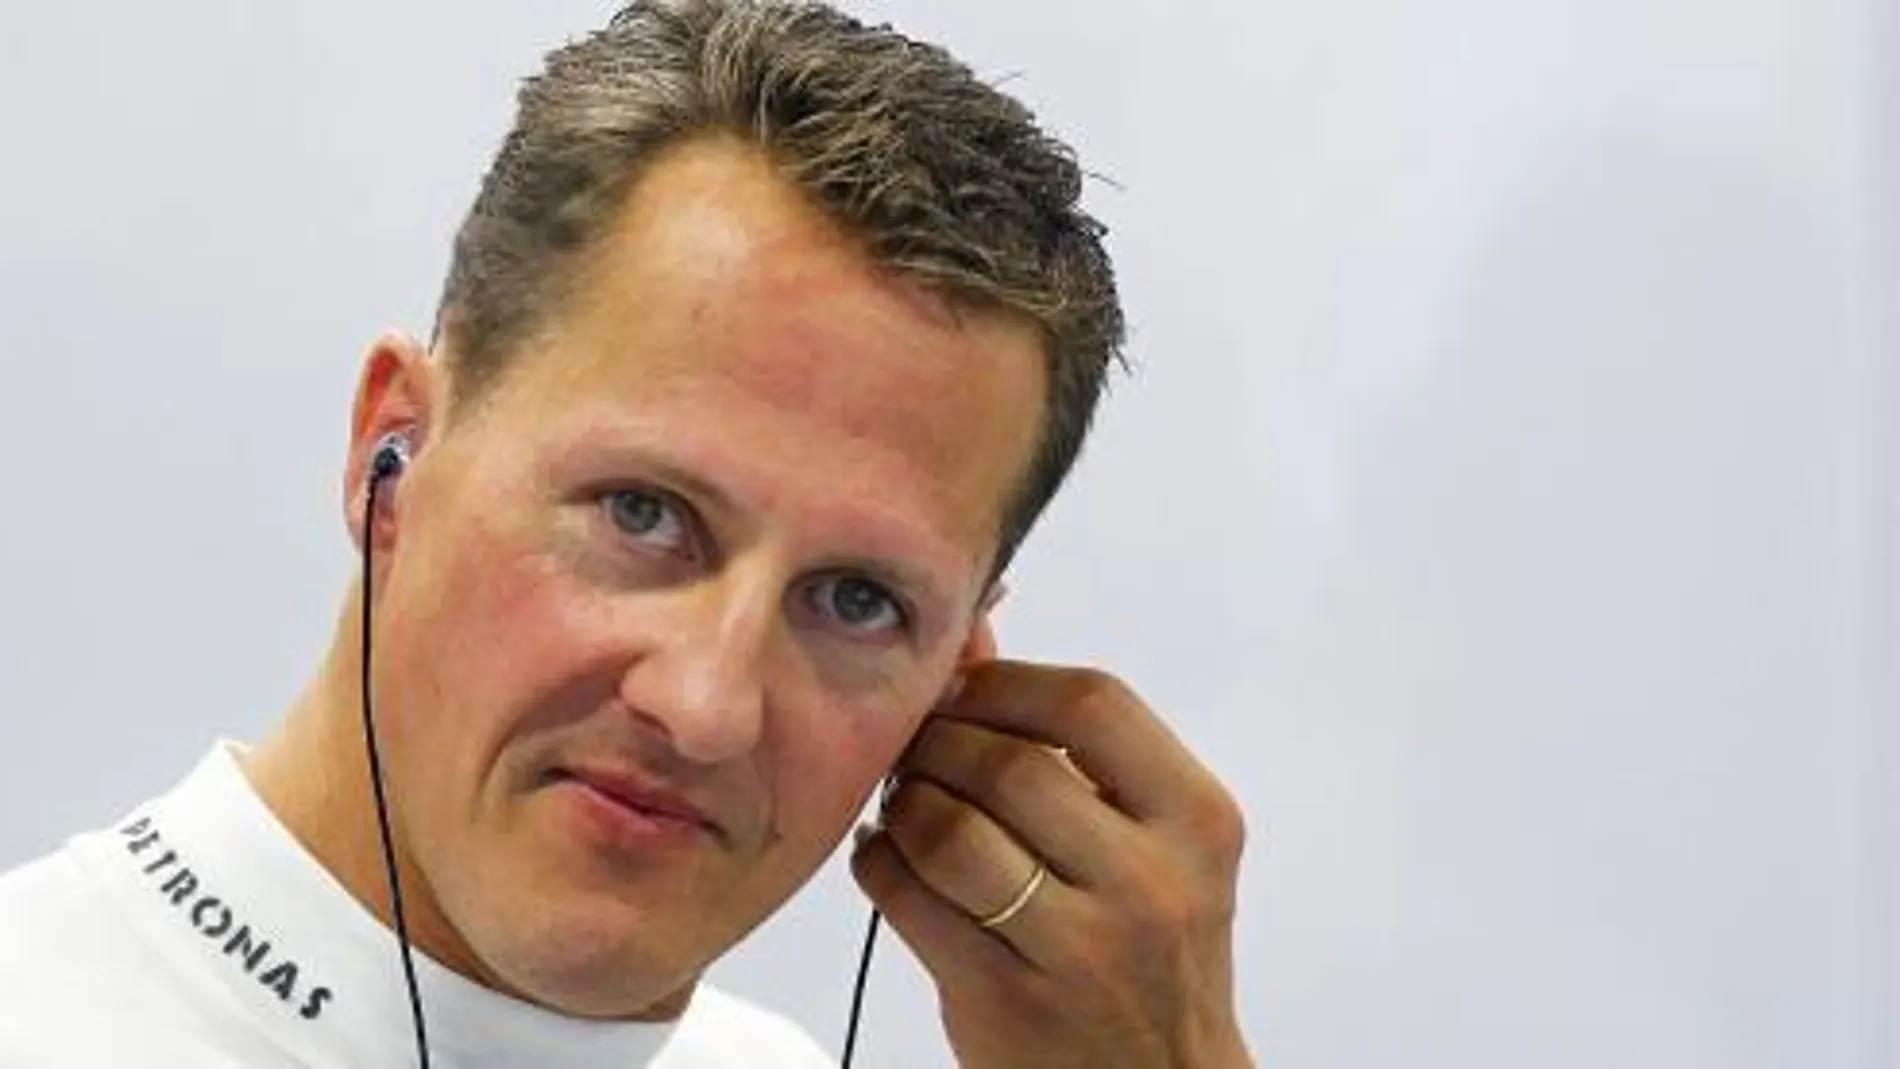 Fotografía de archivo tomada el 21 de septiembre de 2012 que muestra al entonces piloto de Fórmula Uno Michael Schumacher